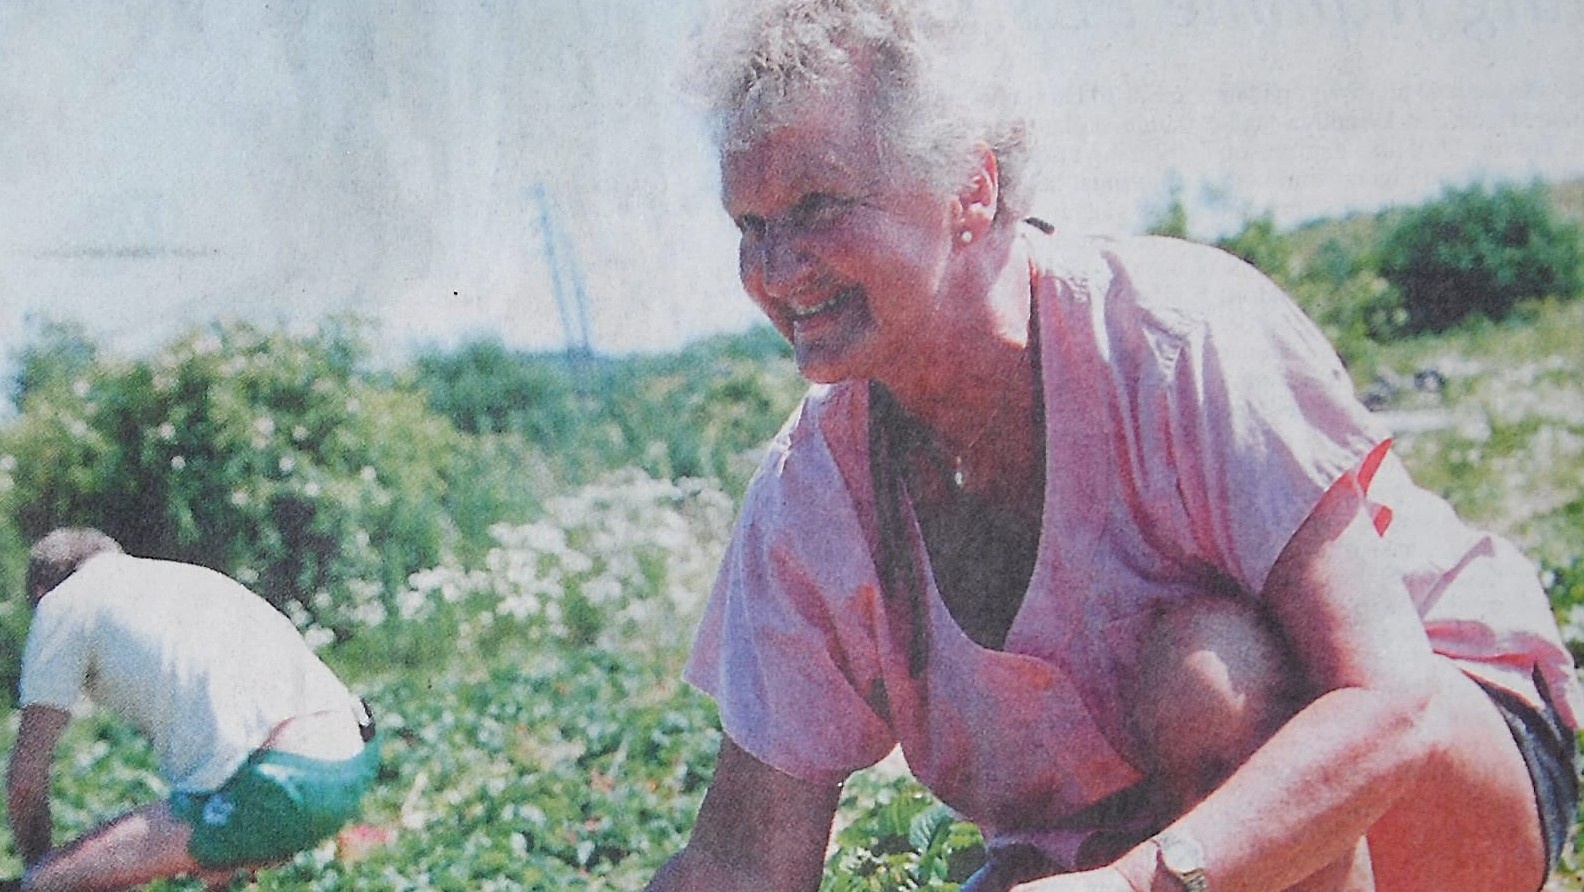 Carola från Osby tänker frysa in sina jordgubbar och ha dem till efterrätt i vinter.
Arkiv: Helene Nordgren